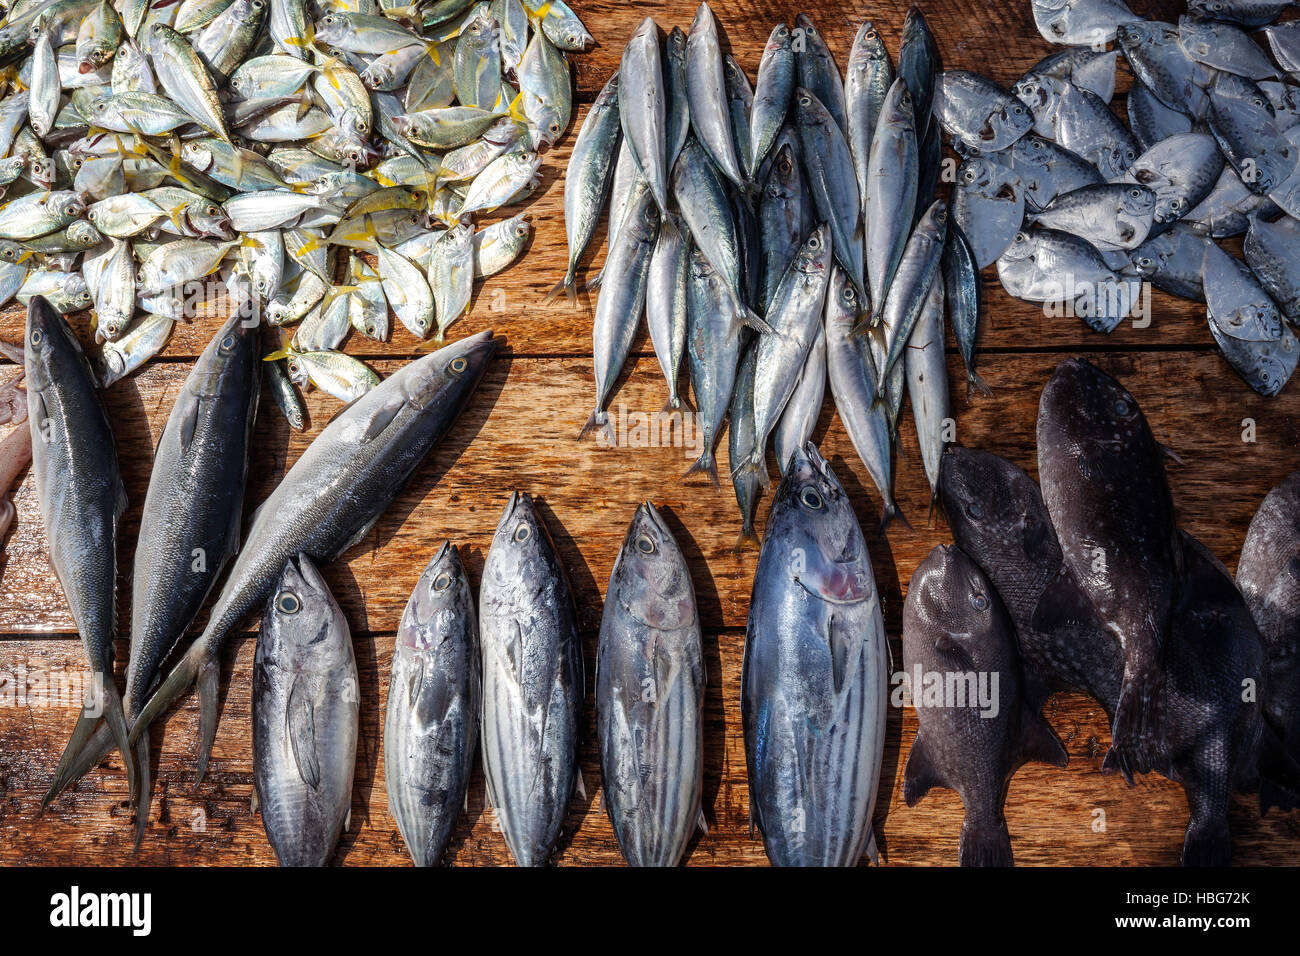 Pesce fresco sul tavolo per la vendita, Weligama, sud della provincia, Sri Lanka Foto Stock